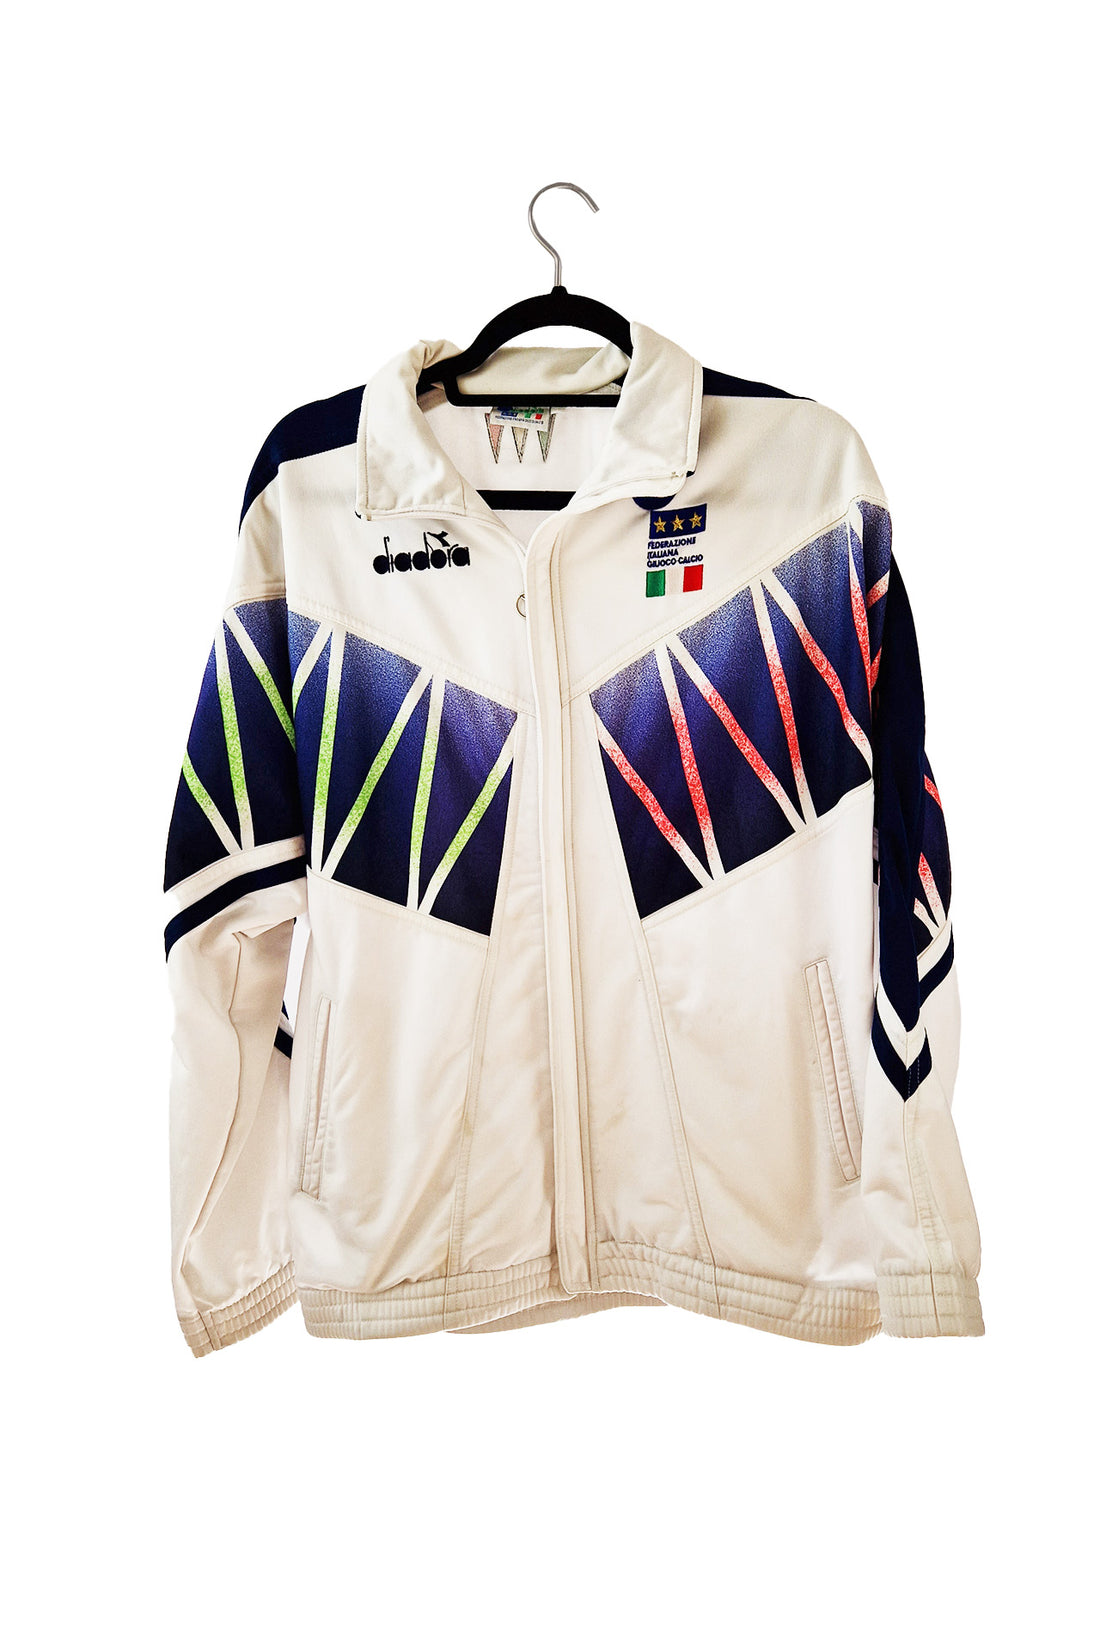 Italy 1994 Track Jacket